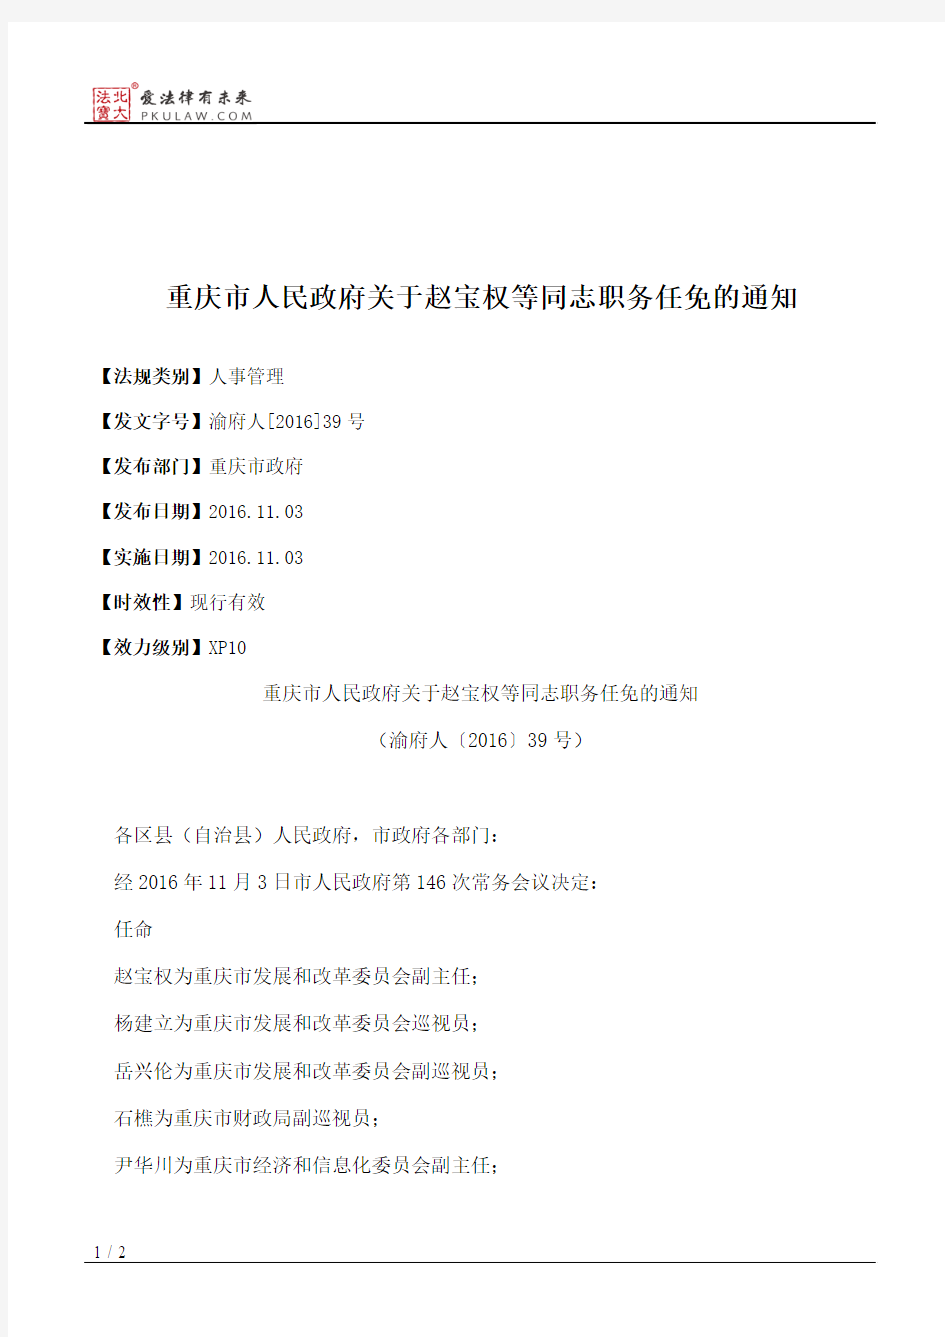 重庆市人民政府关于赵宝权等同志职务任免的通知